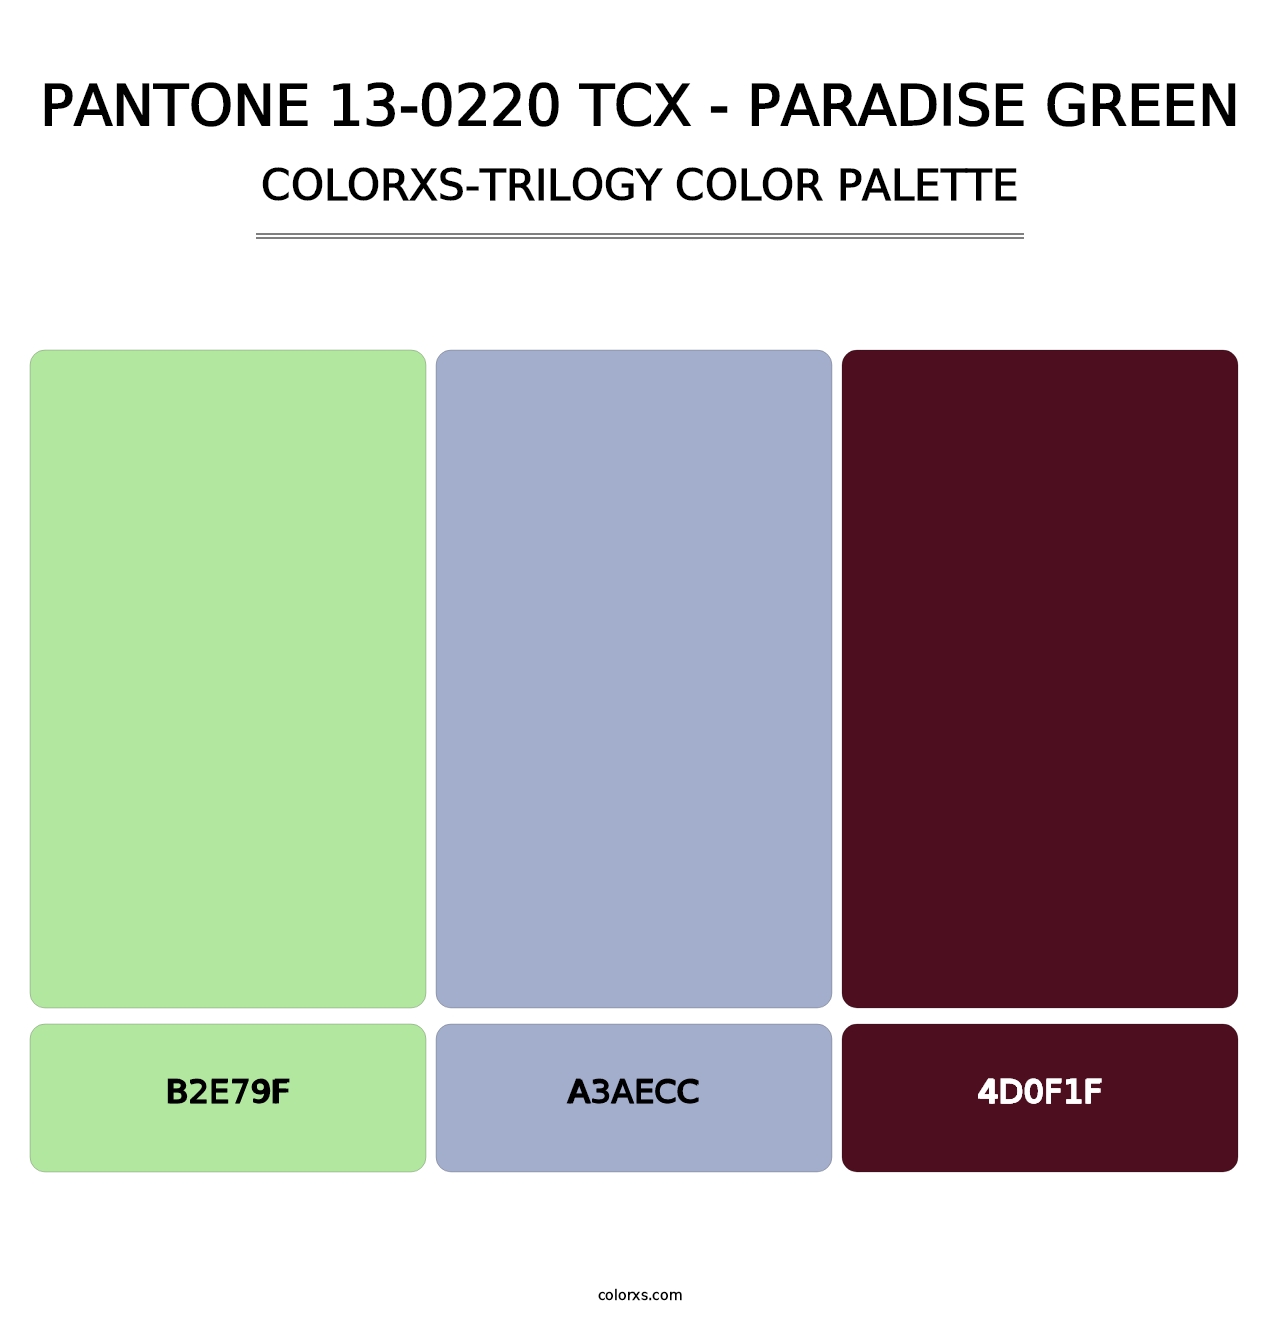 PANTONE 13-0220 TCX - Paradise Green - Colorxs Trilogy Palette